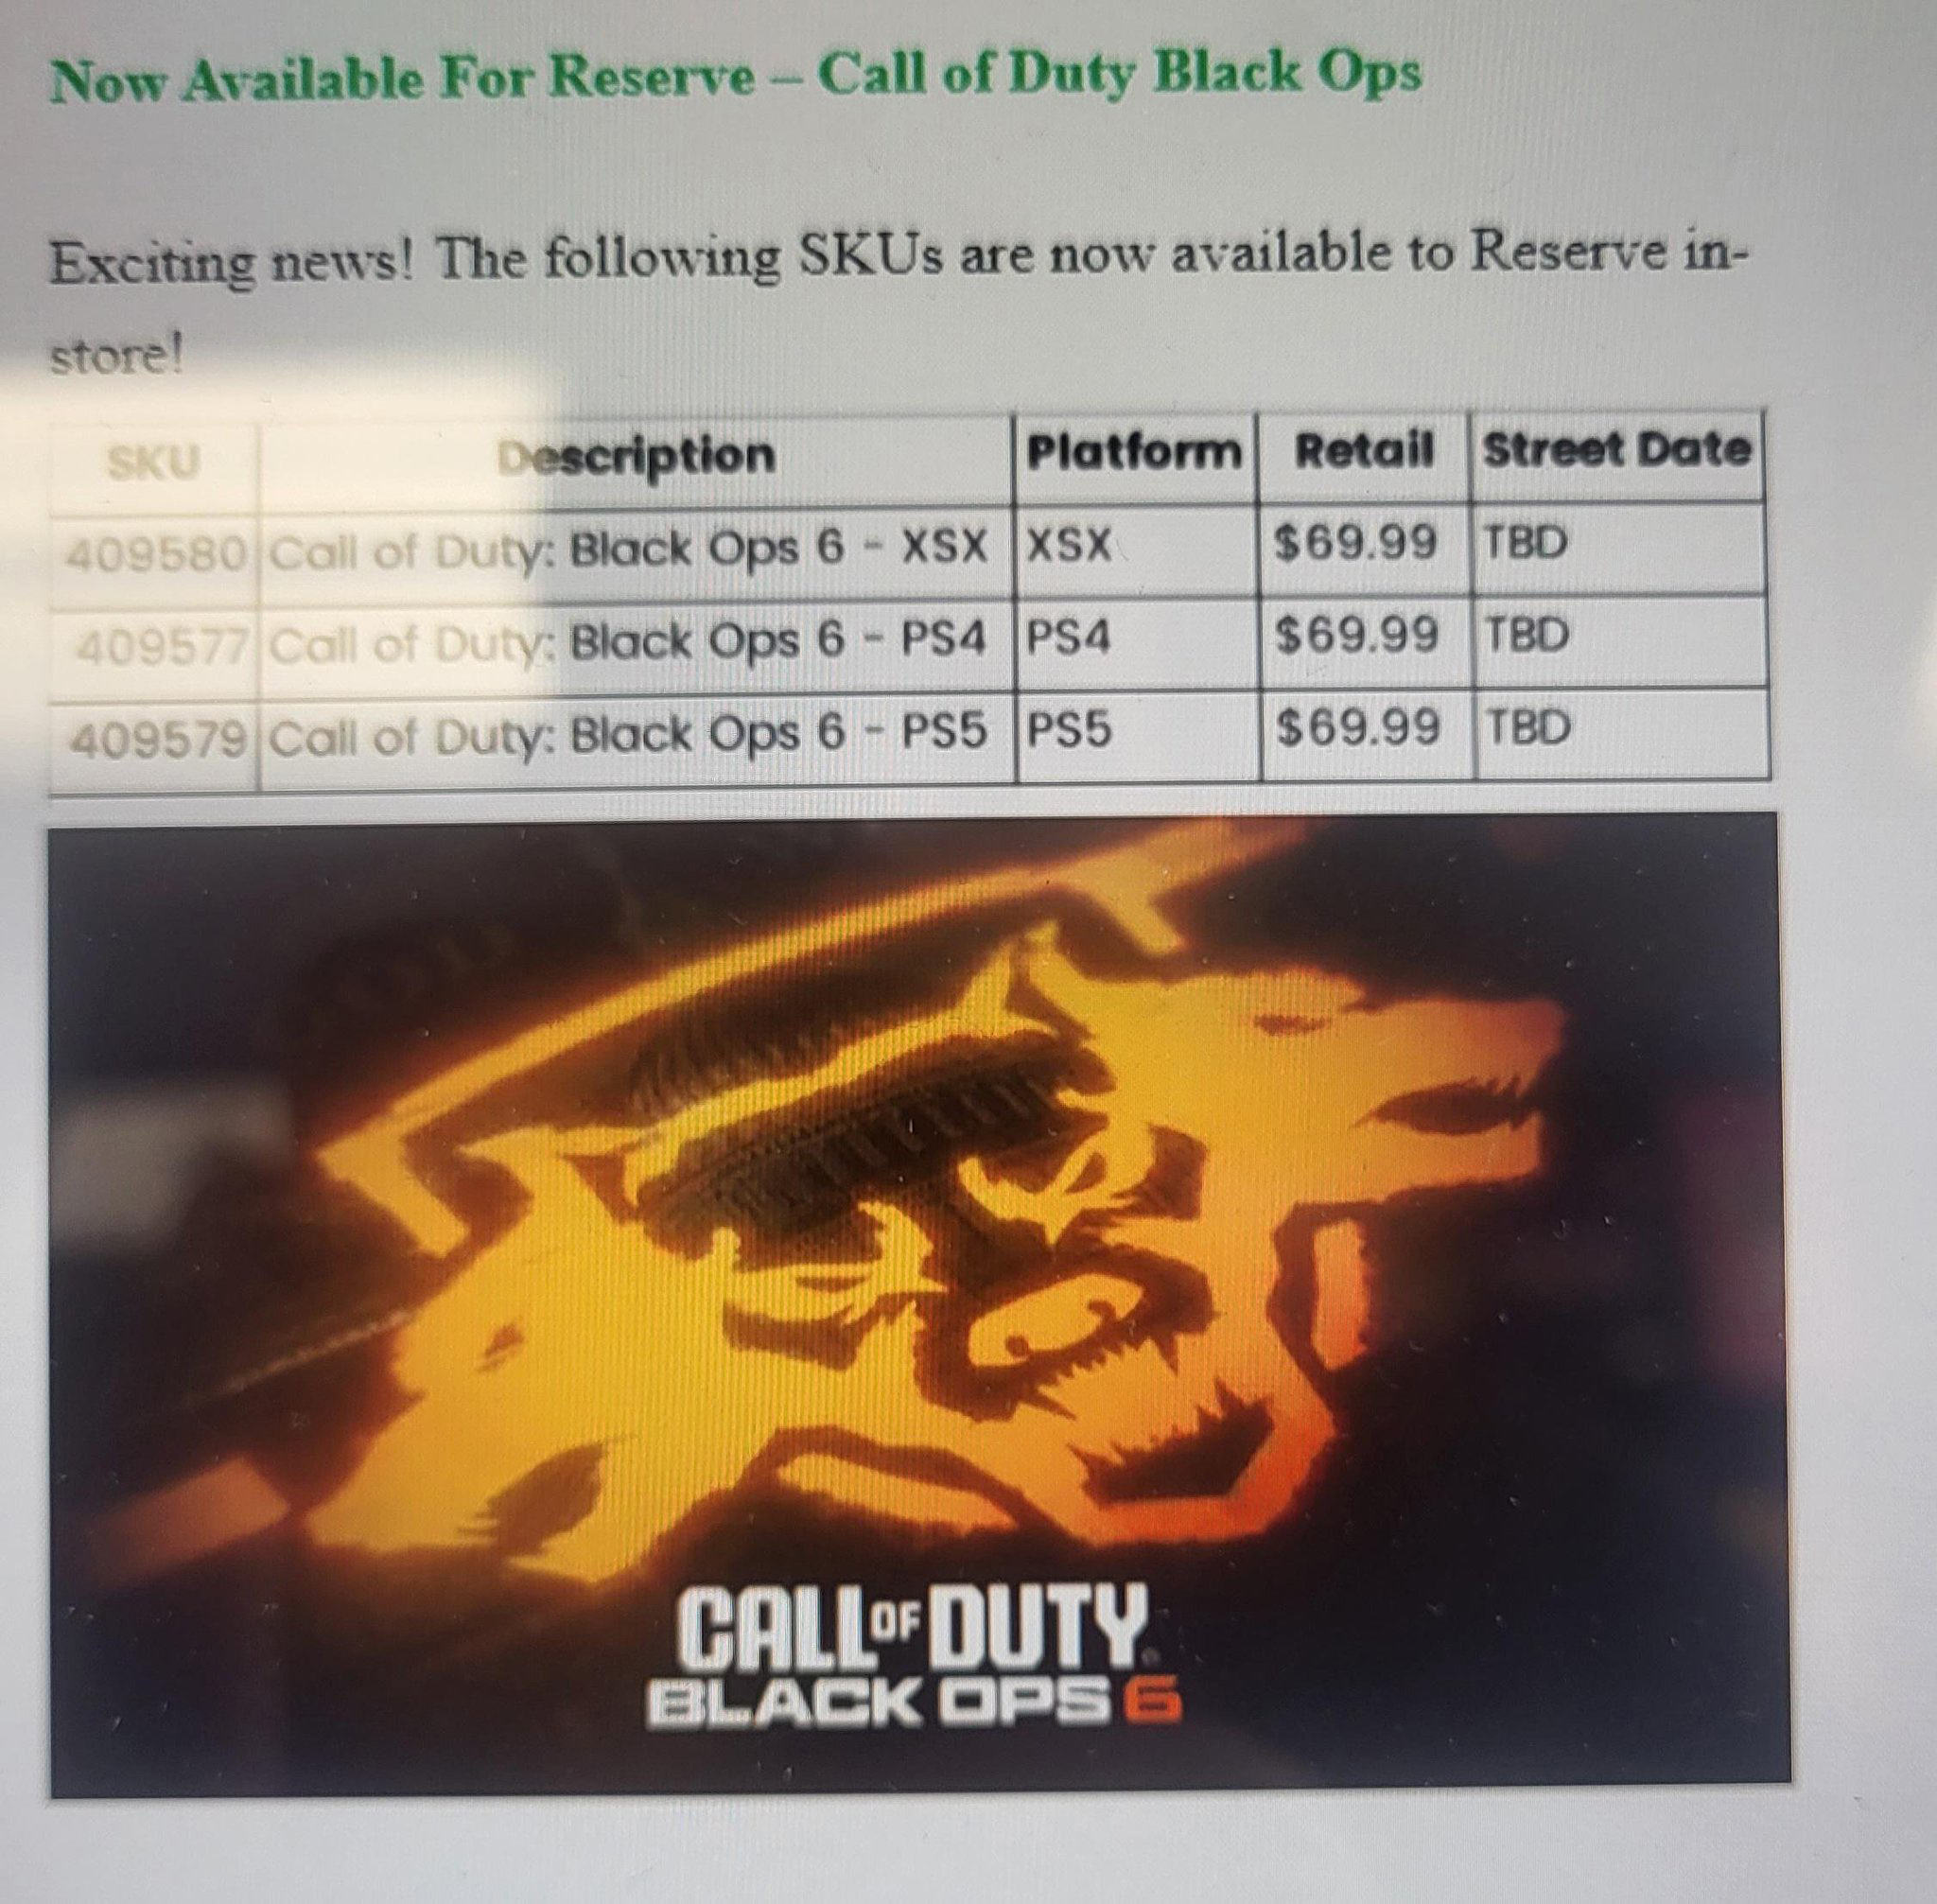 بازی Call of Duty: Black Ops 6 در فهرست محصولات فروشگاه گیم استاپ